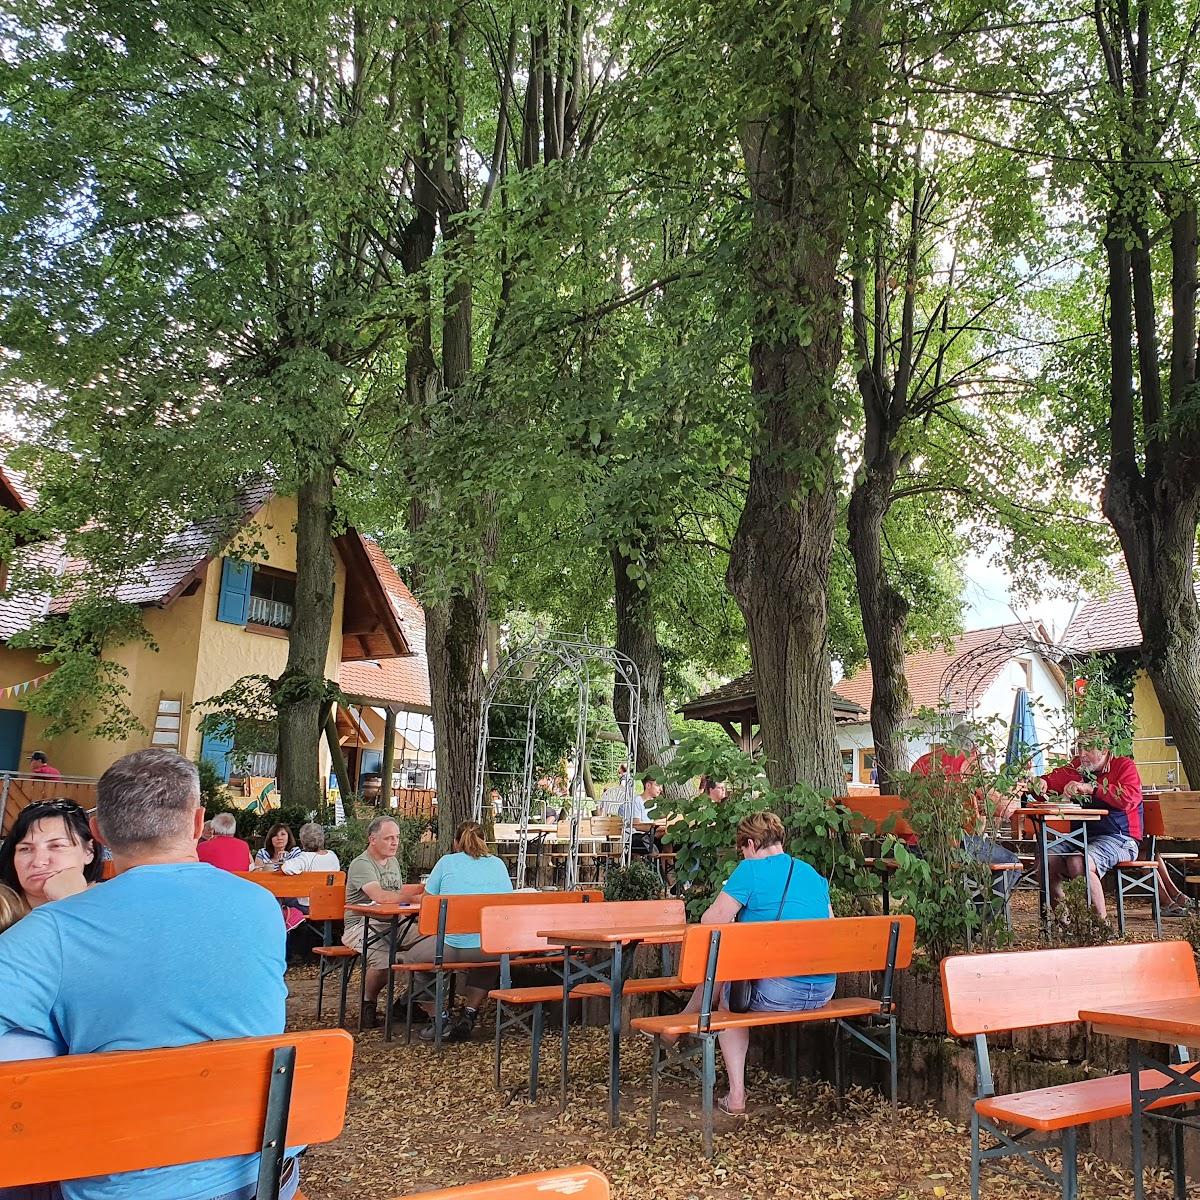 Restaurant "Engelhardt‘s Keller" in  Ebensfeld